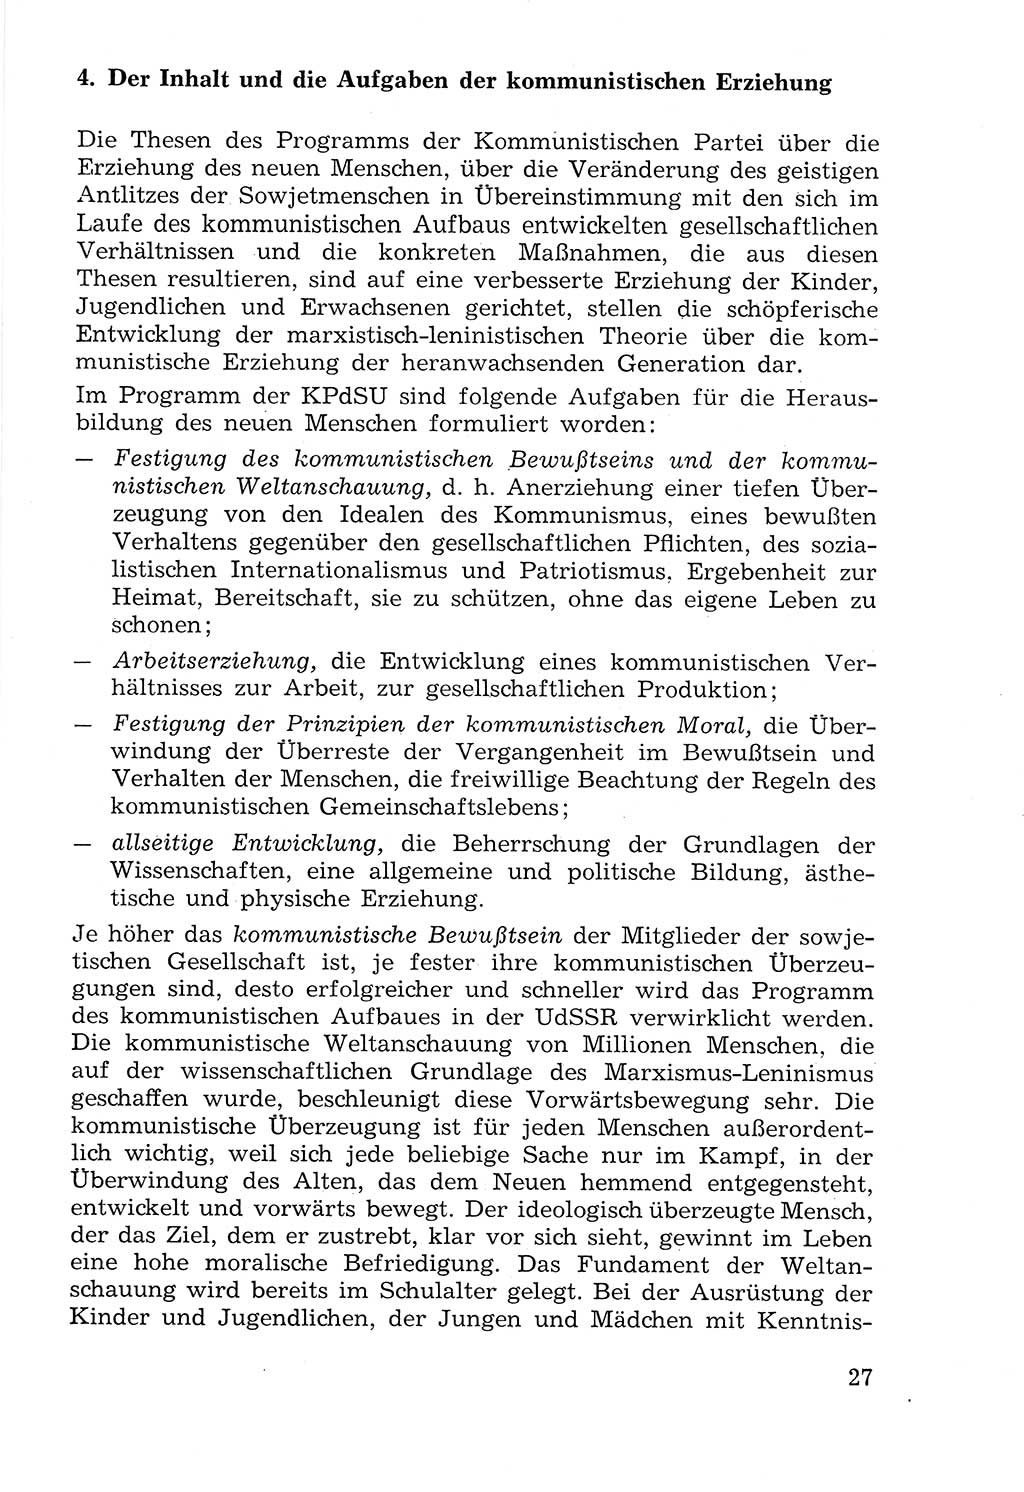 Lehrbuch der Strafvollzugspädagogik [Deutsche Demokratische Republik (DDR)] 1969, Seite 27 (Lb. SV-Pd. DDR 1969, S. 27)